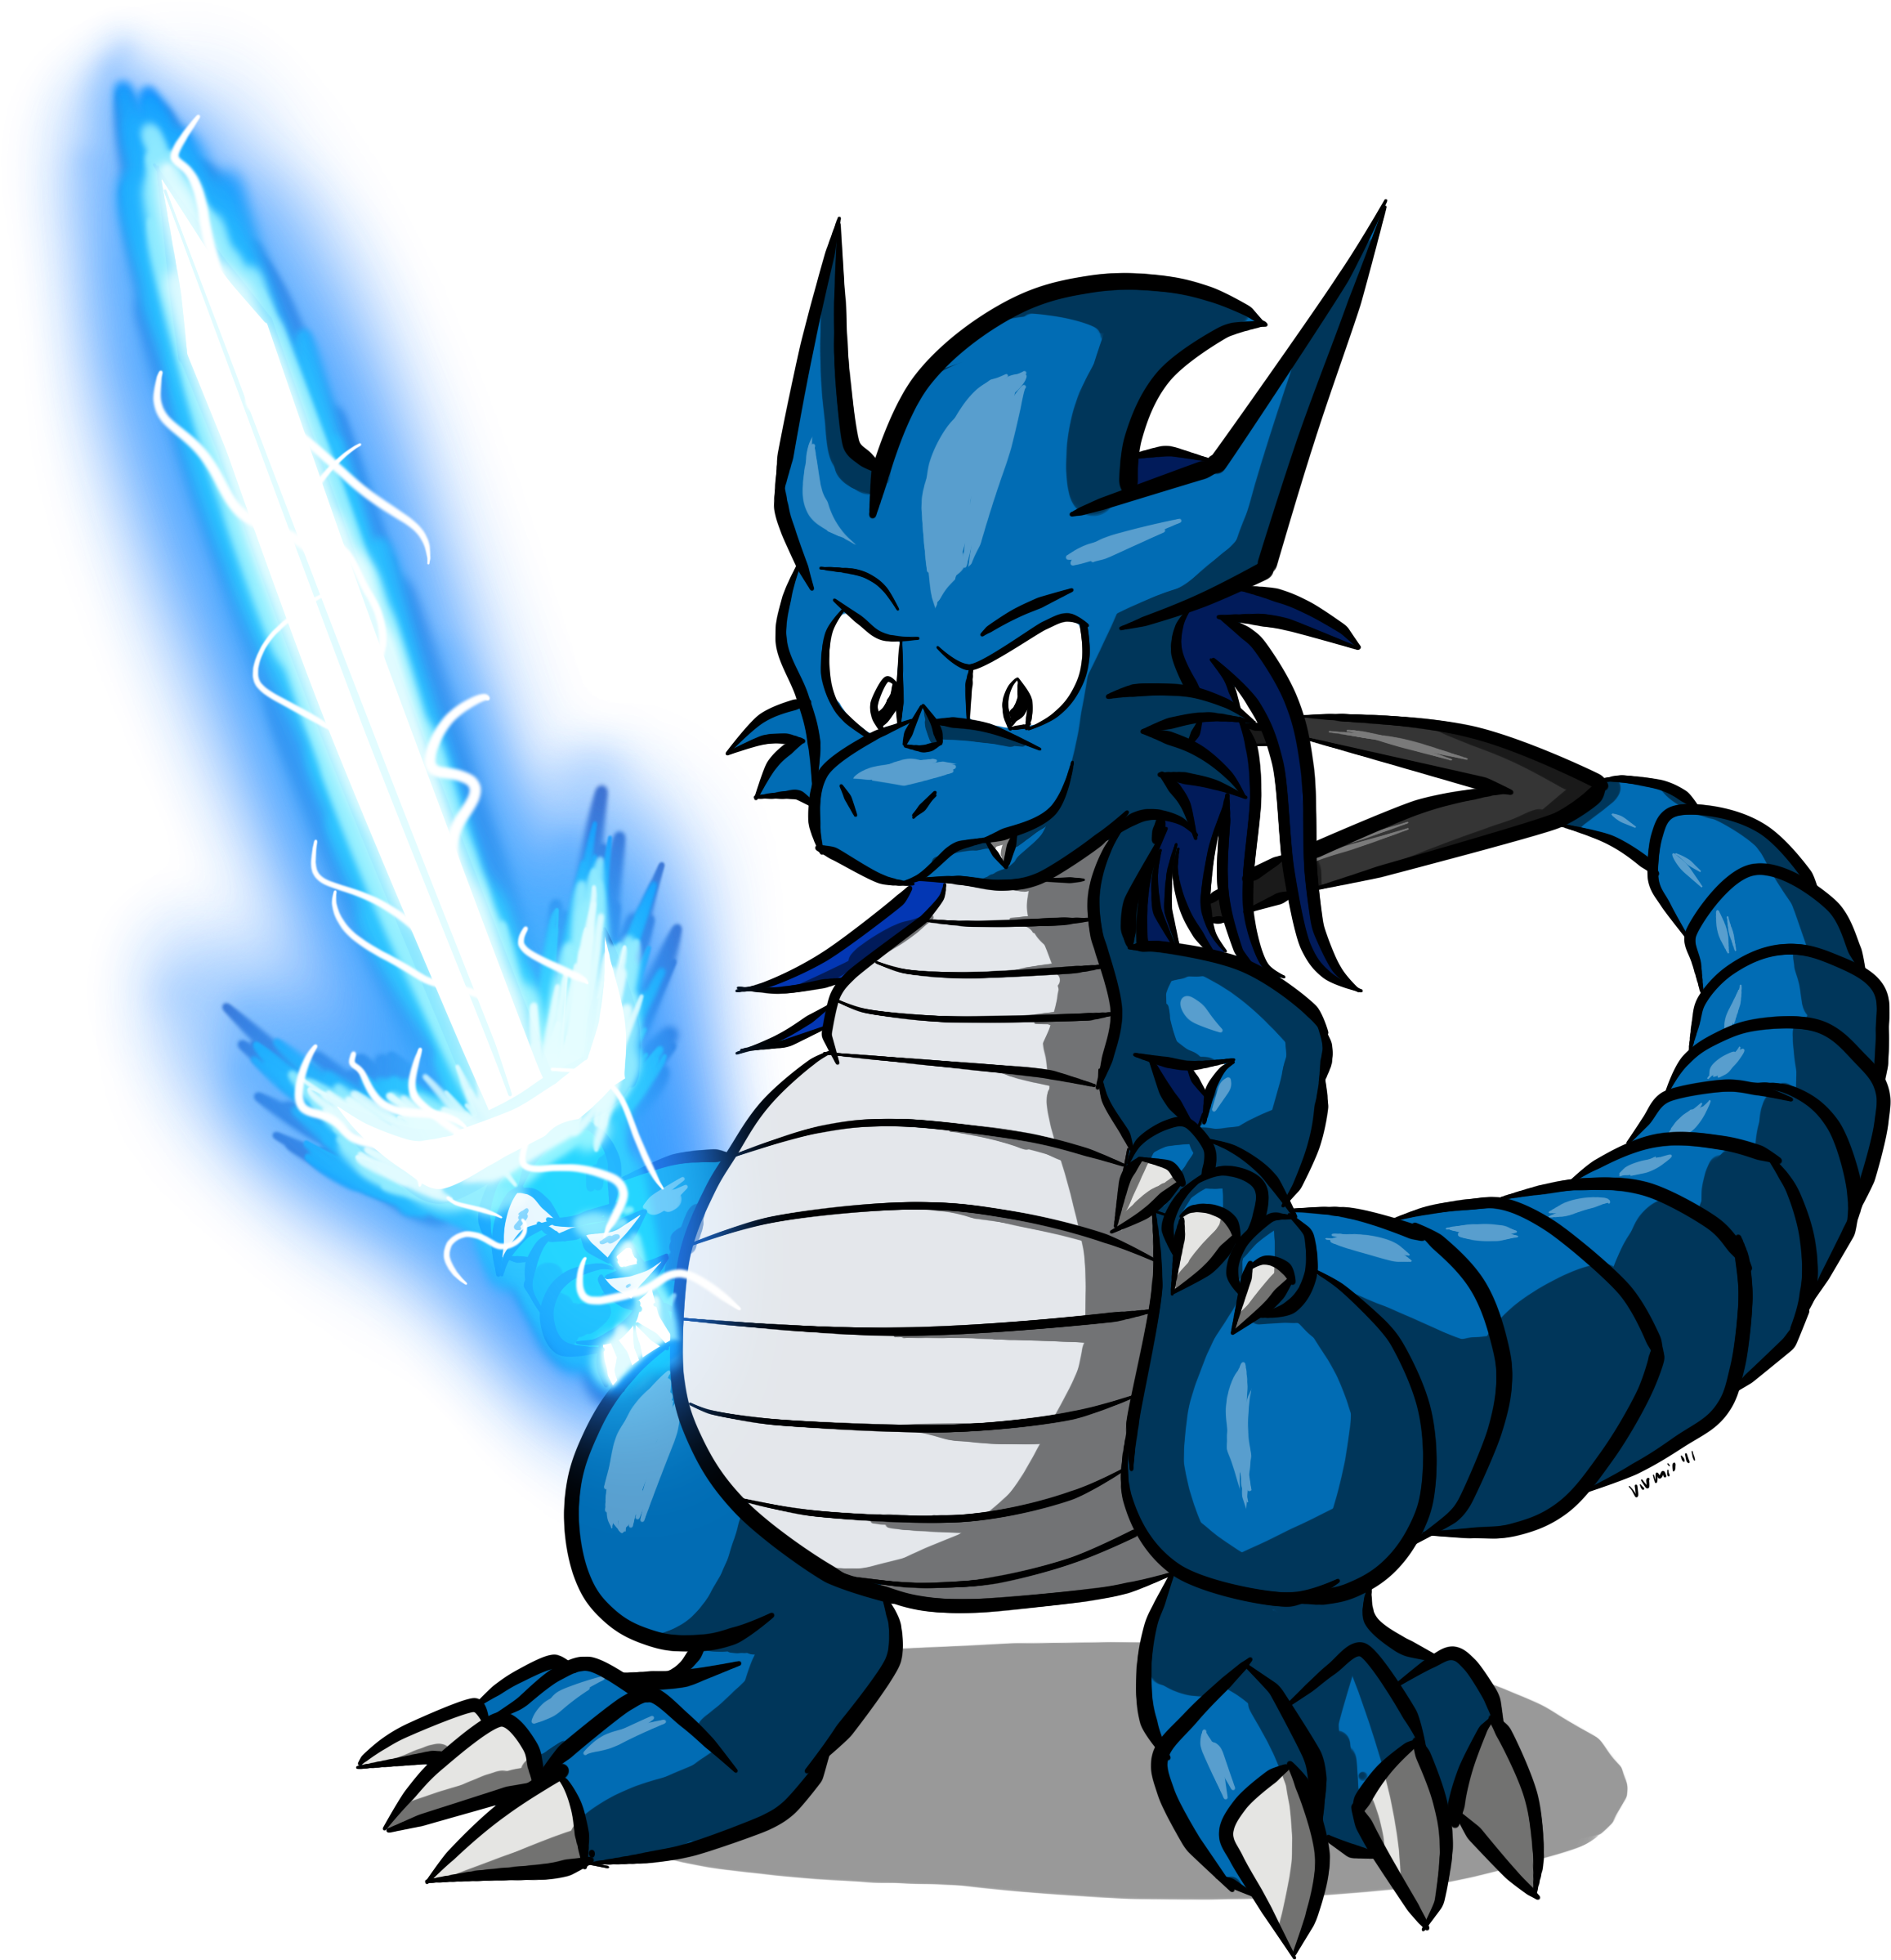 Big Version - Drawn Dragon On Sword (2648x2572)